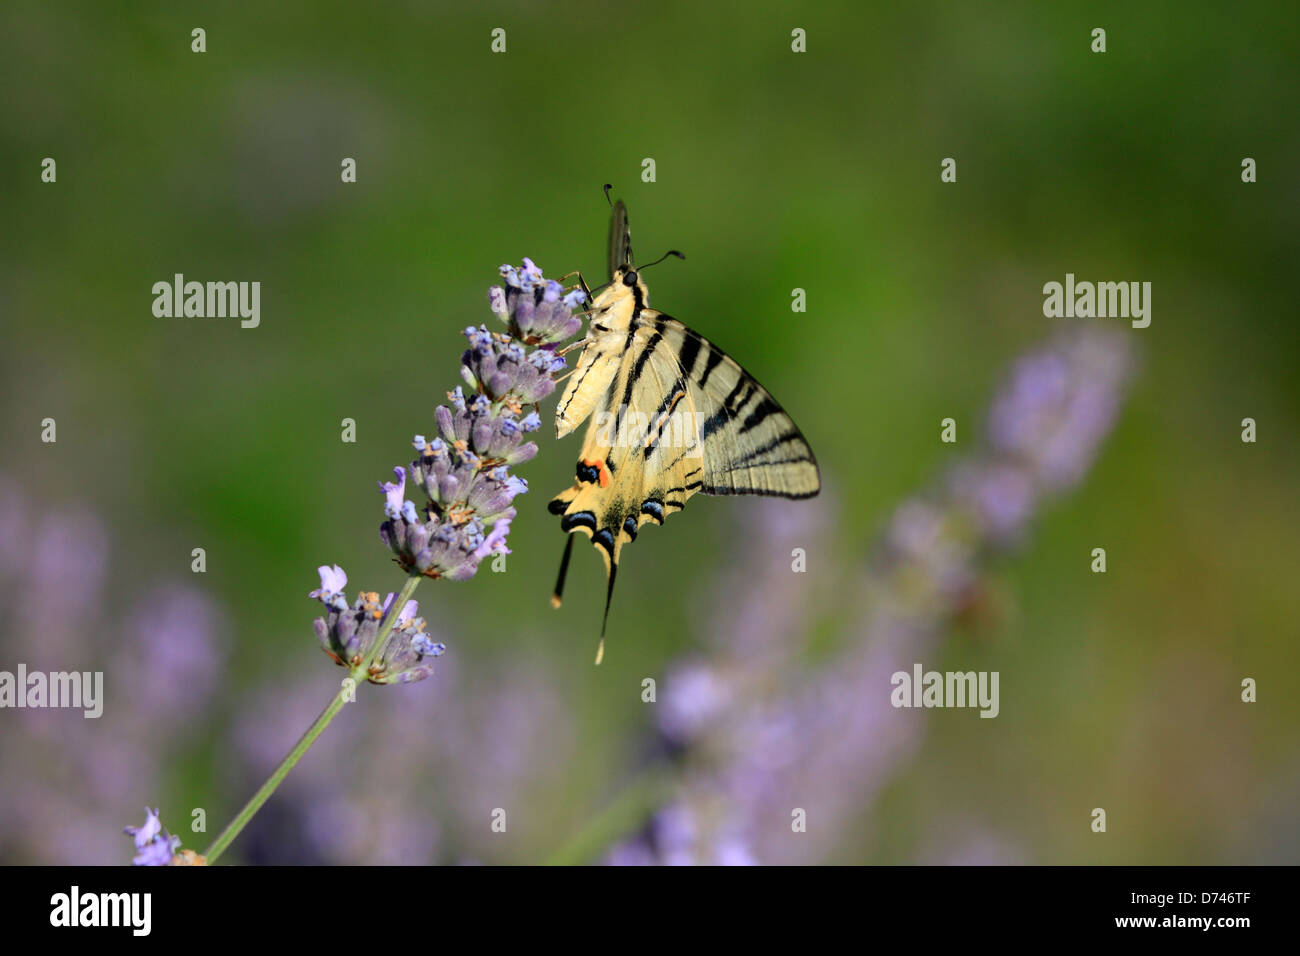 Schmetterling auf Lavendel Blume, Insel Hvar Kroatien. Papilio Machaon, knappe Schwalbenschwanz-Iphiclides podalirius Stockfoto